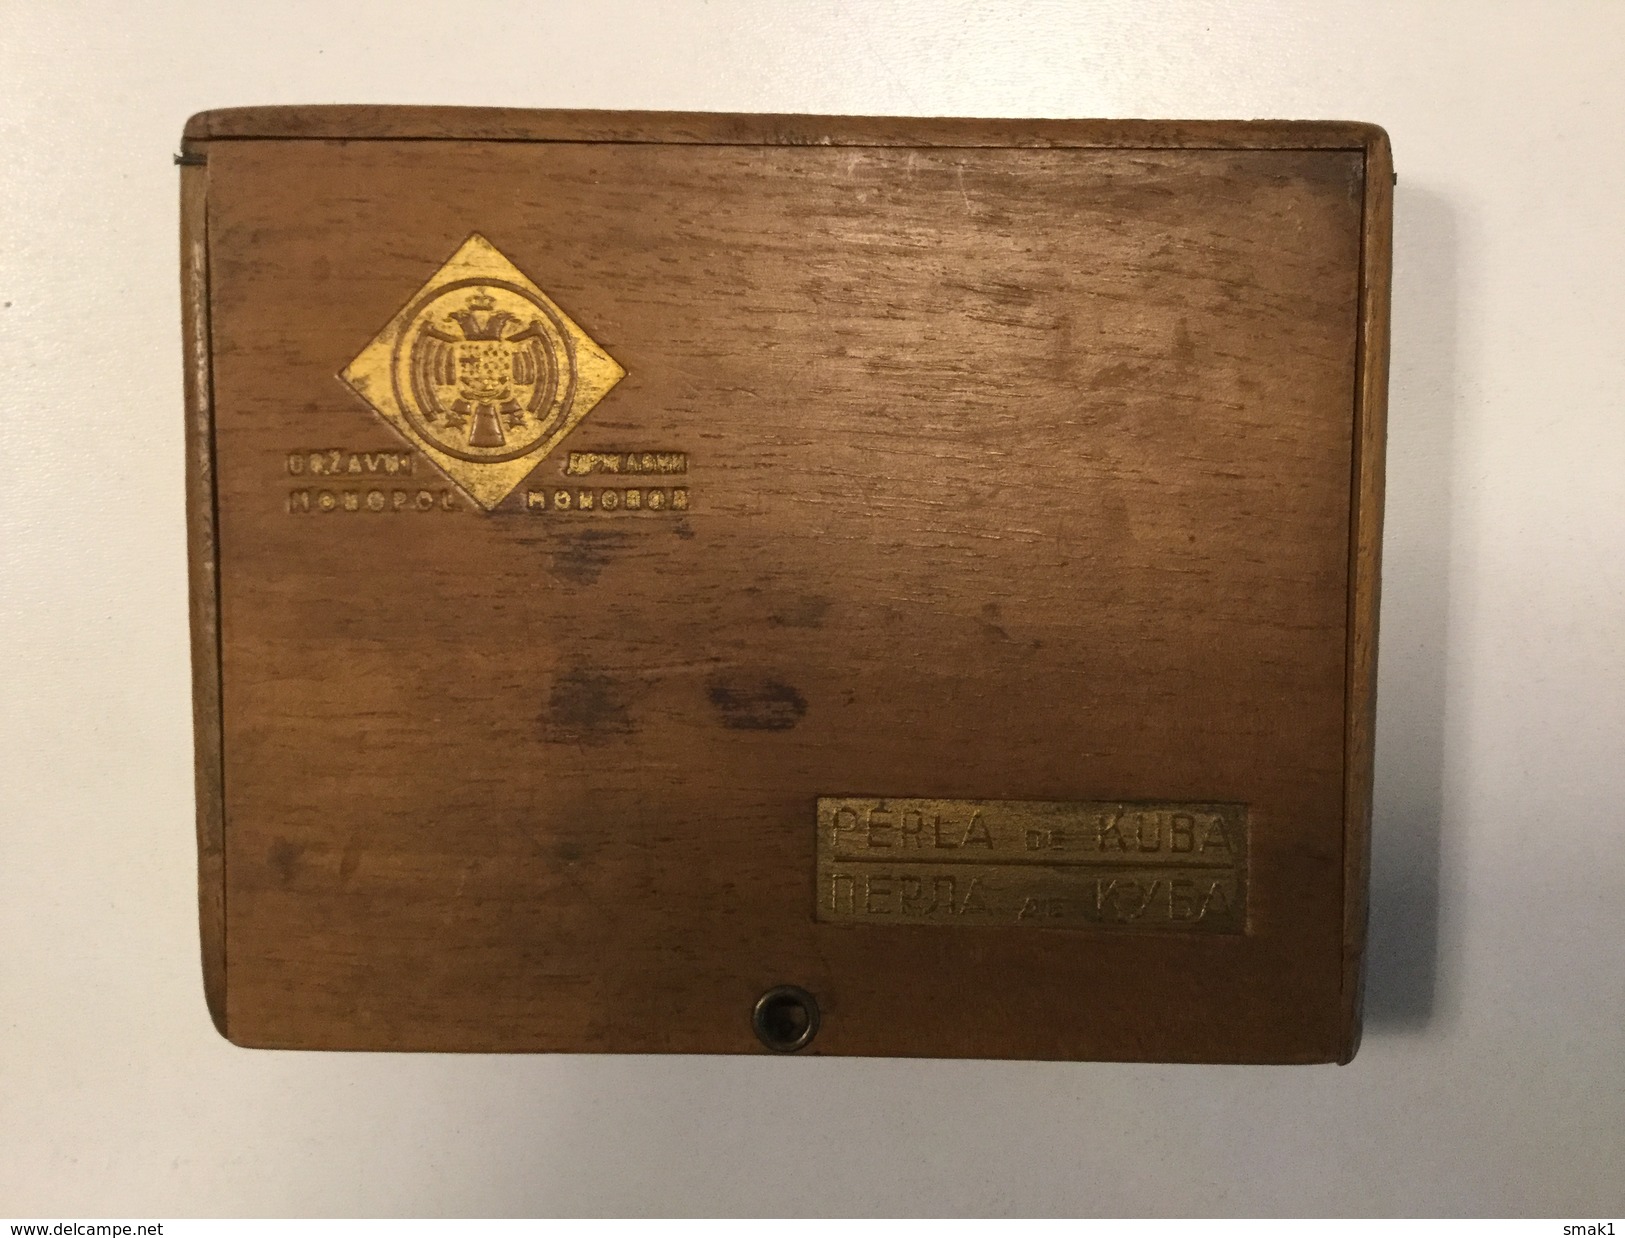 EMPTY CIGARE  BOX    MADE OF  WOOD   PERLA DE KUBA     DRZAVNI MONOPOL   YUGOSLAVIA - Contenitore Di Sigari